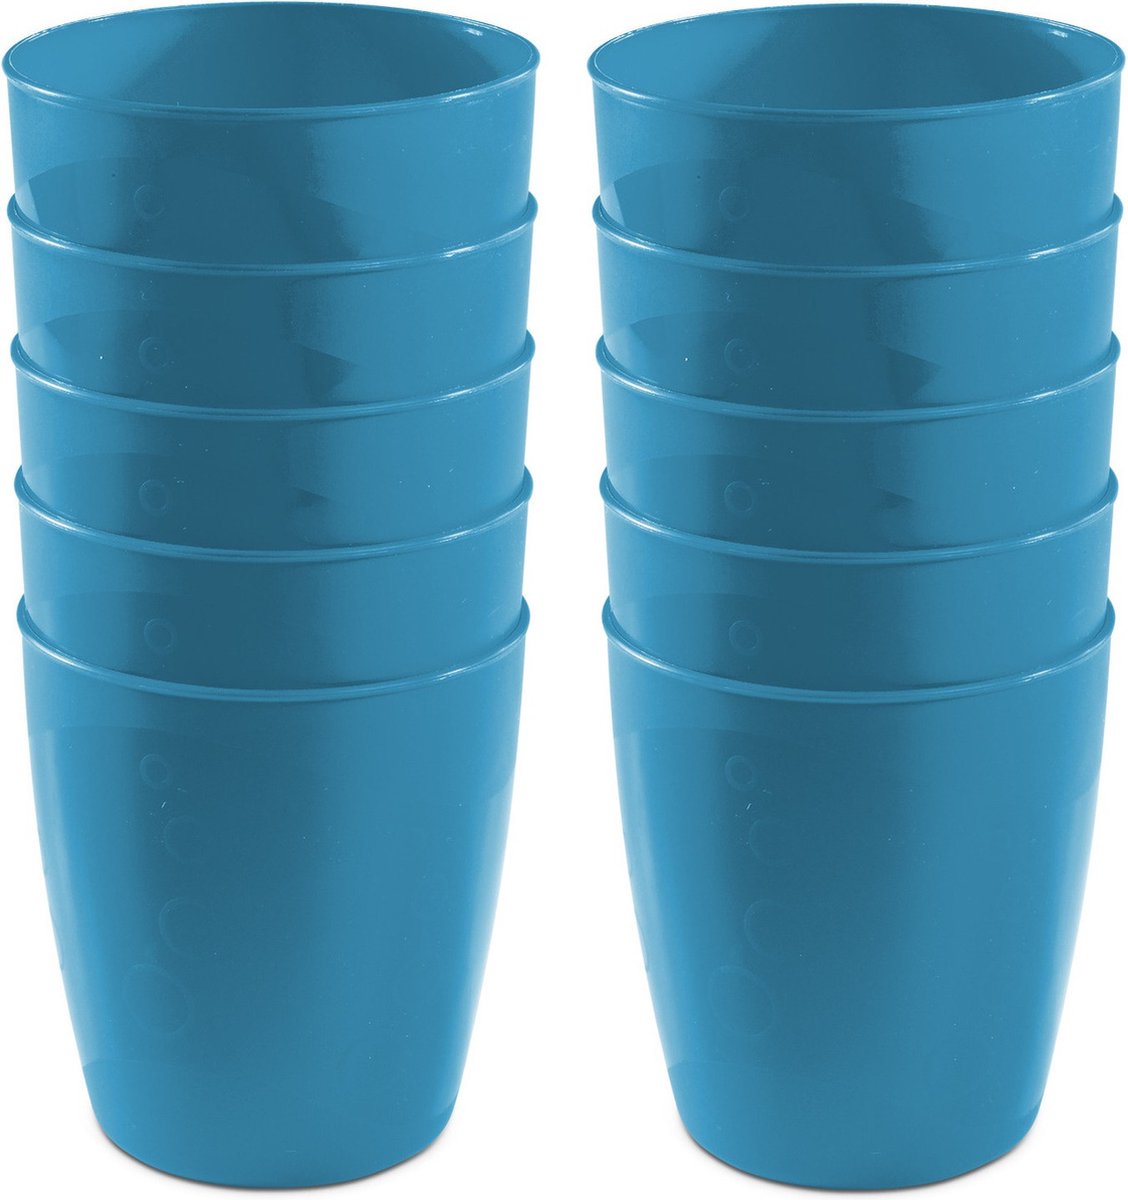 20x drinkbekers van kunststof 300 ml in het blauwï¿½- Limonade bekers - Campingservies/picknickservies